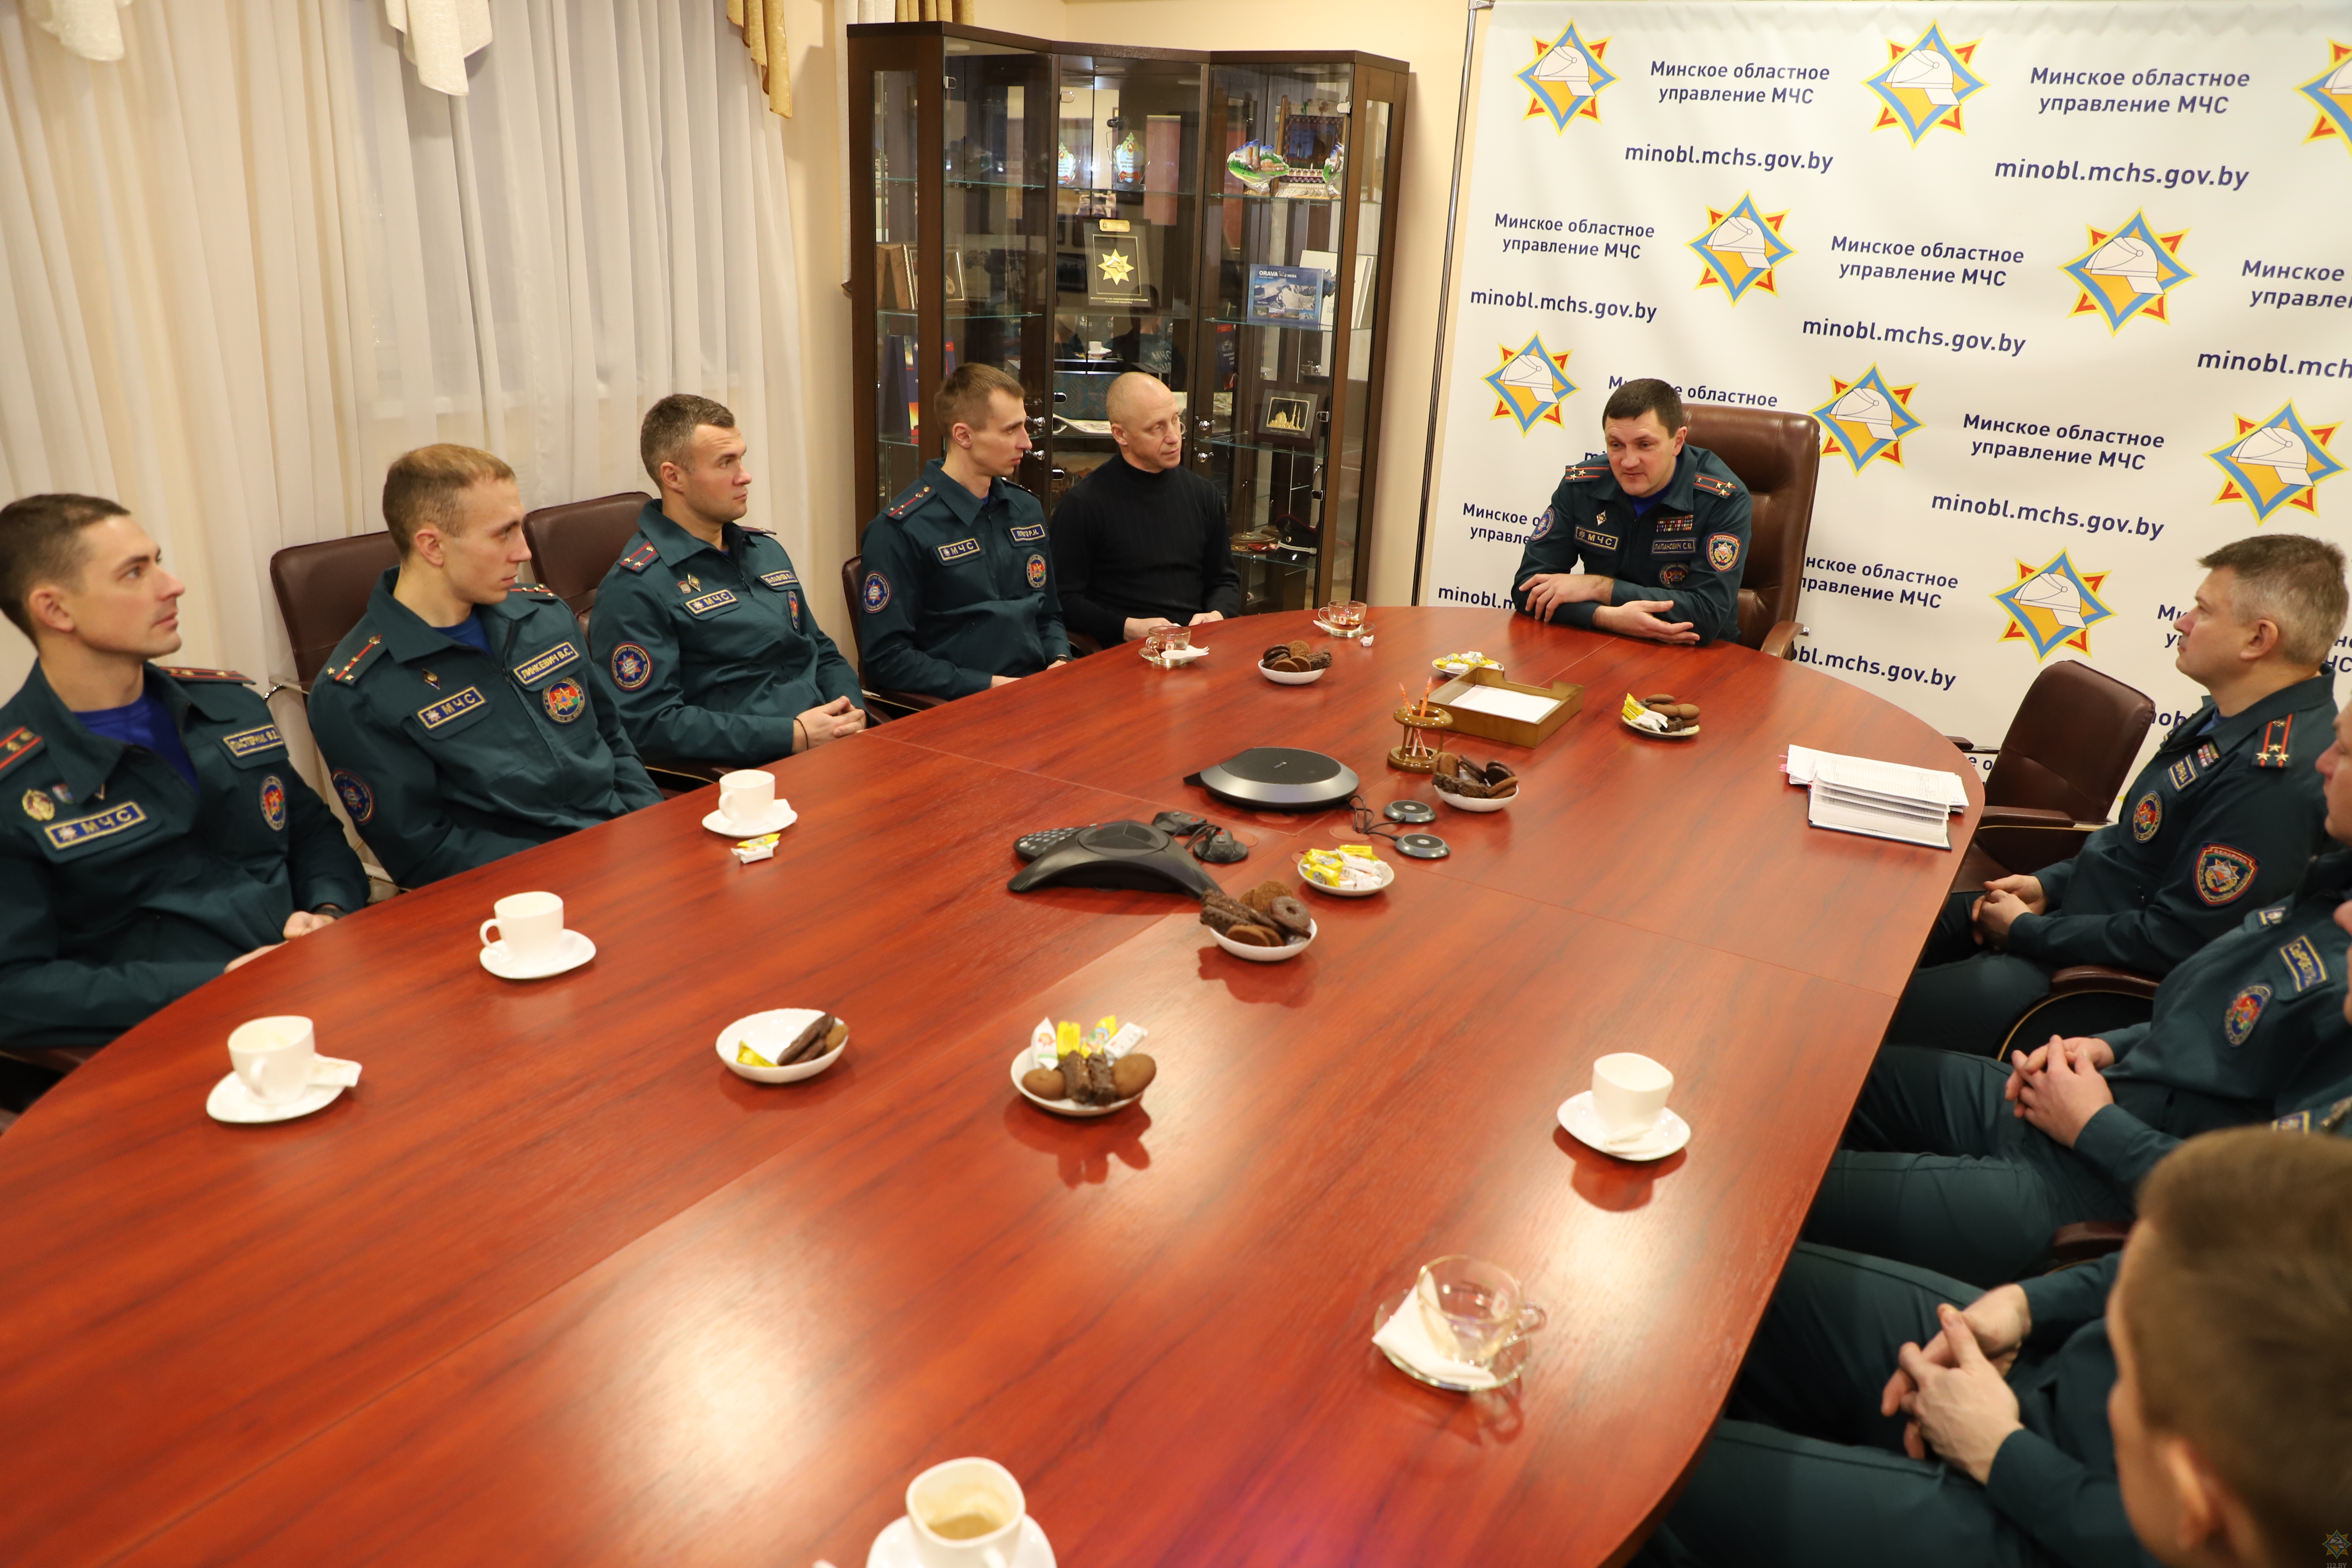 Начальник Минского областного управления МЧС встретился с командой по пожарно-спасательному спорту